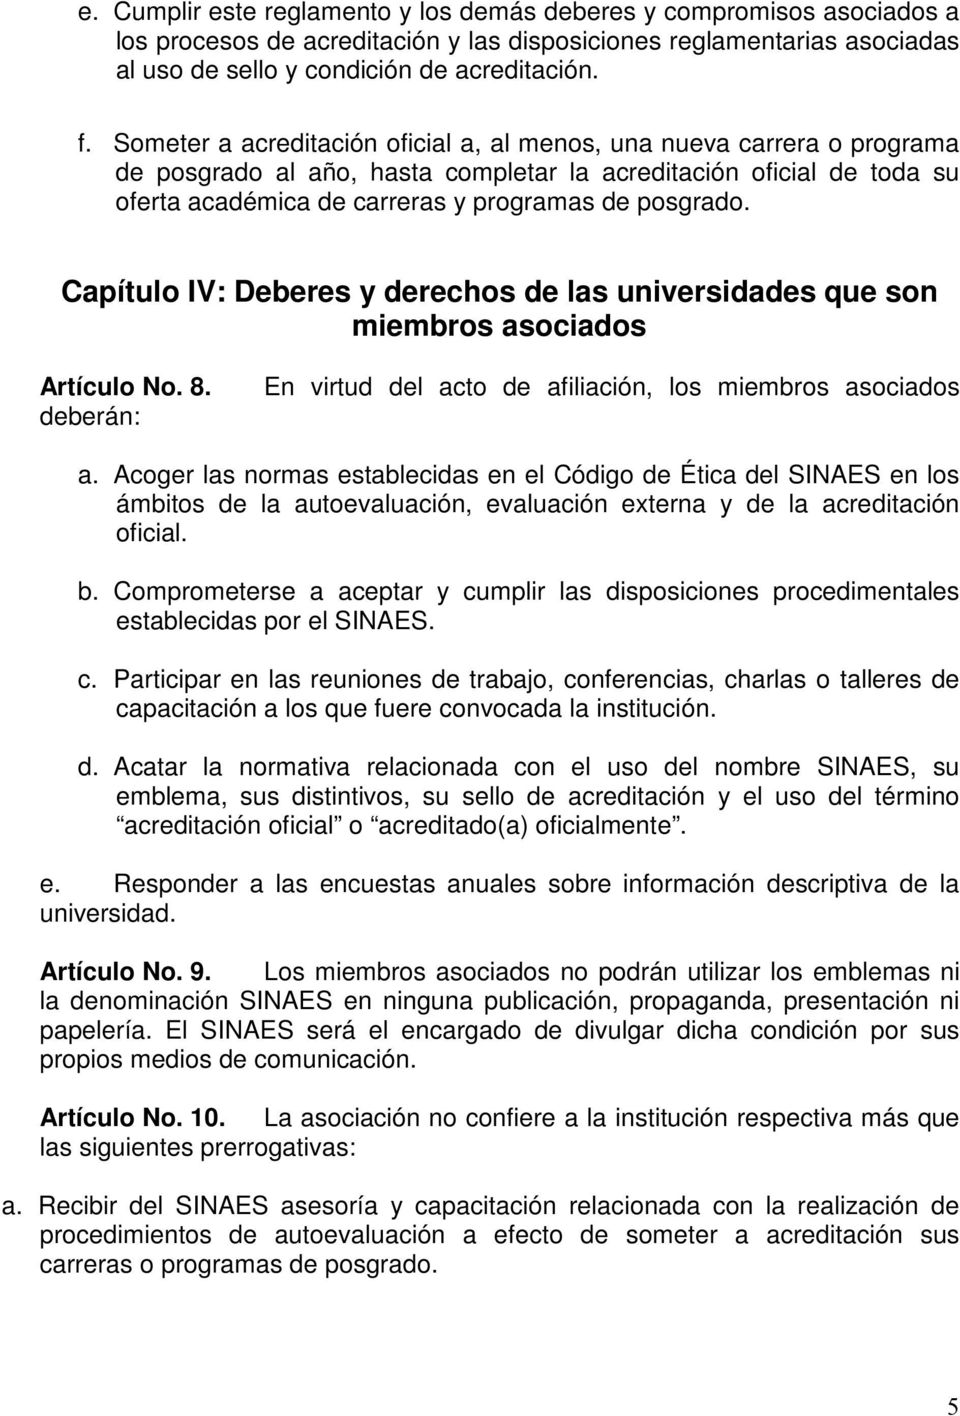 Capítulo IV: Deberes y derechos de las universidades que son miembros asociados Artículo No. 8. deberán: En virtud del acto de afiliación, los miembros asociados a.